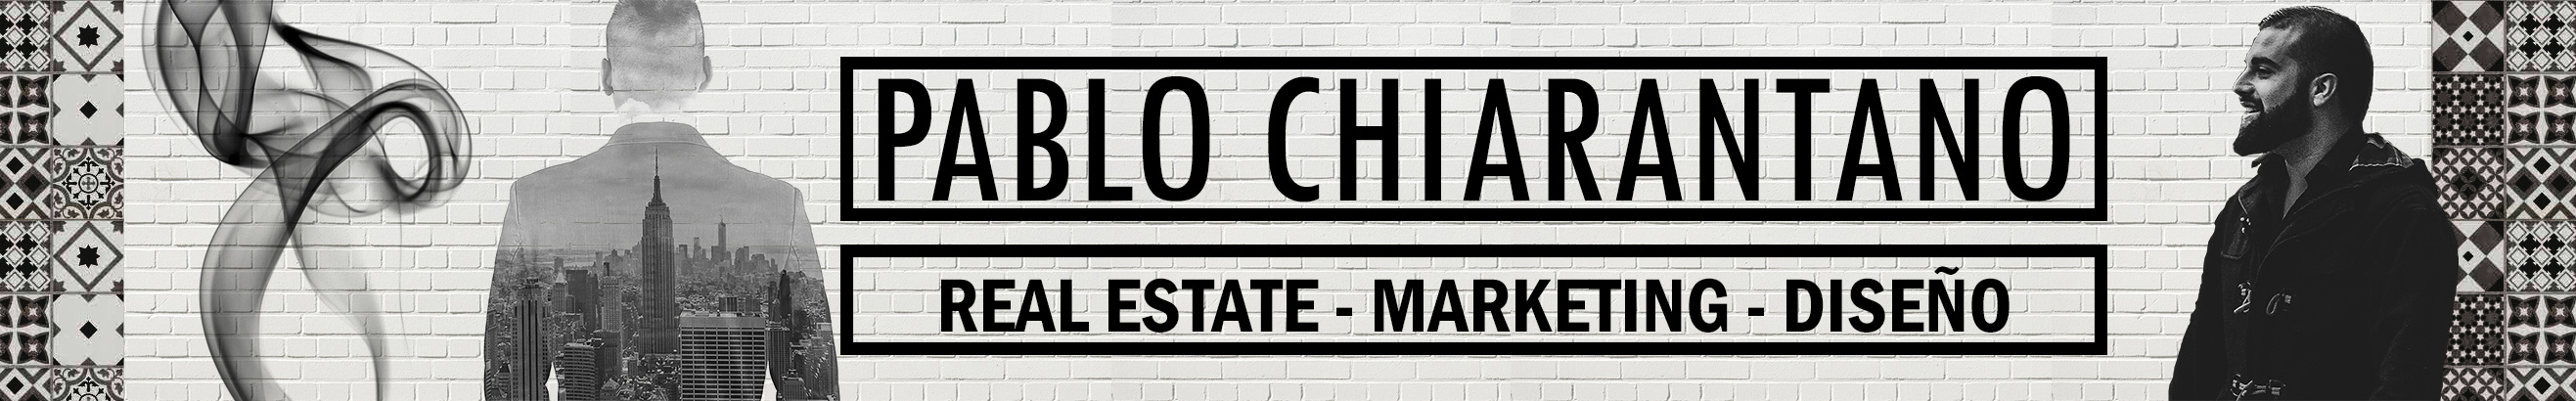 Pablo Chiarantano ✪'s profile banner